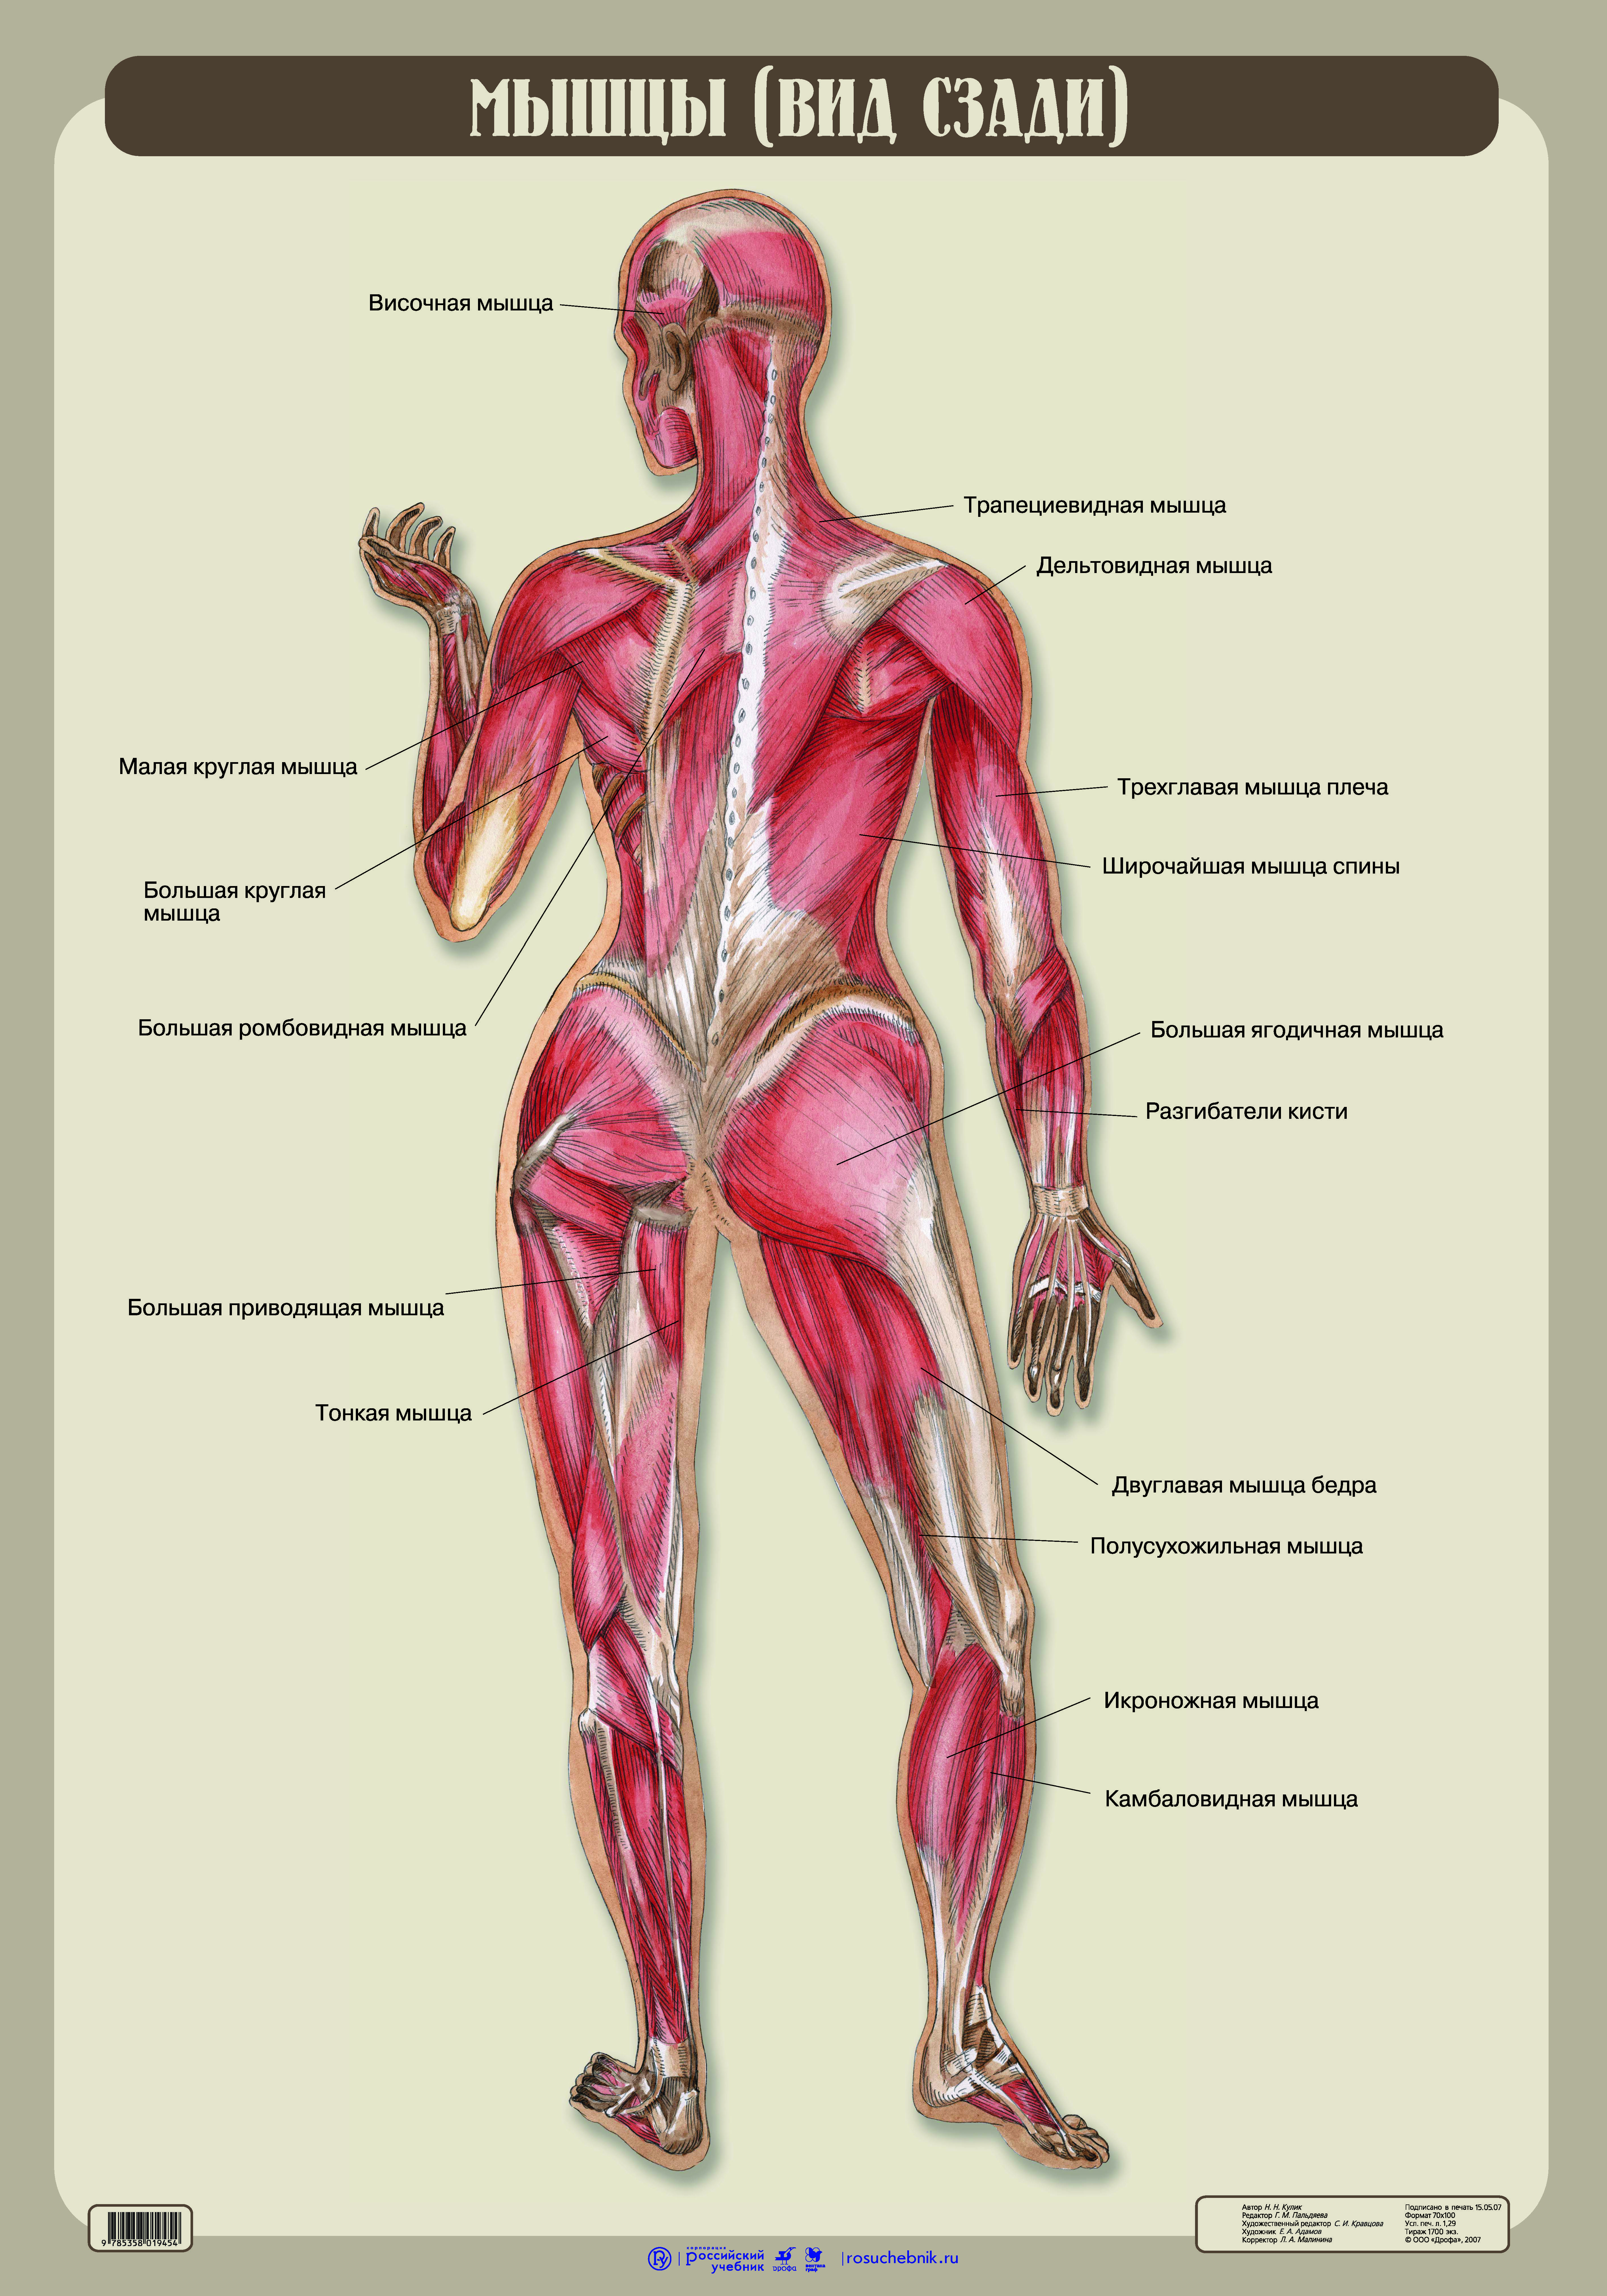 Связки тела. Мышцы человека вид сзади. Строение человека мышцы и связки. Анатомия тела человека мышцы и связки. Скелет мышц человека с названием и описанием.